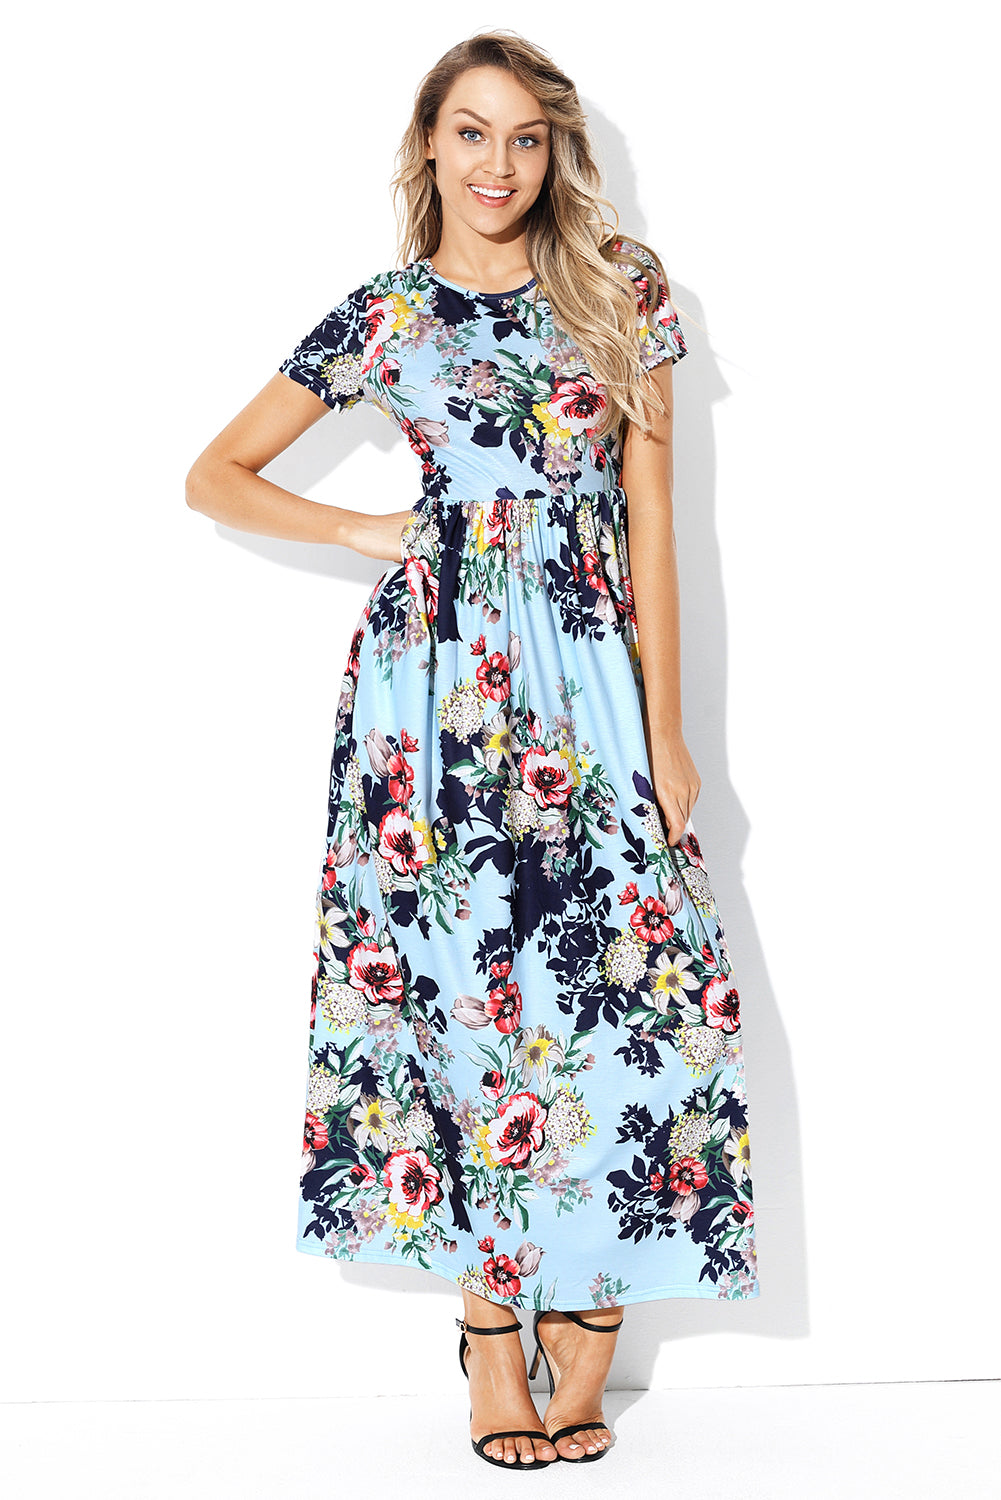 Pocket Design Short Sleeve Light Blue Floral Maxi Dress